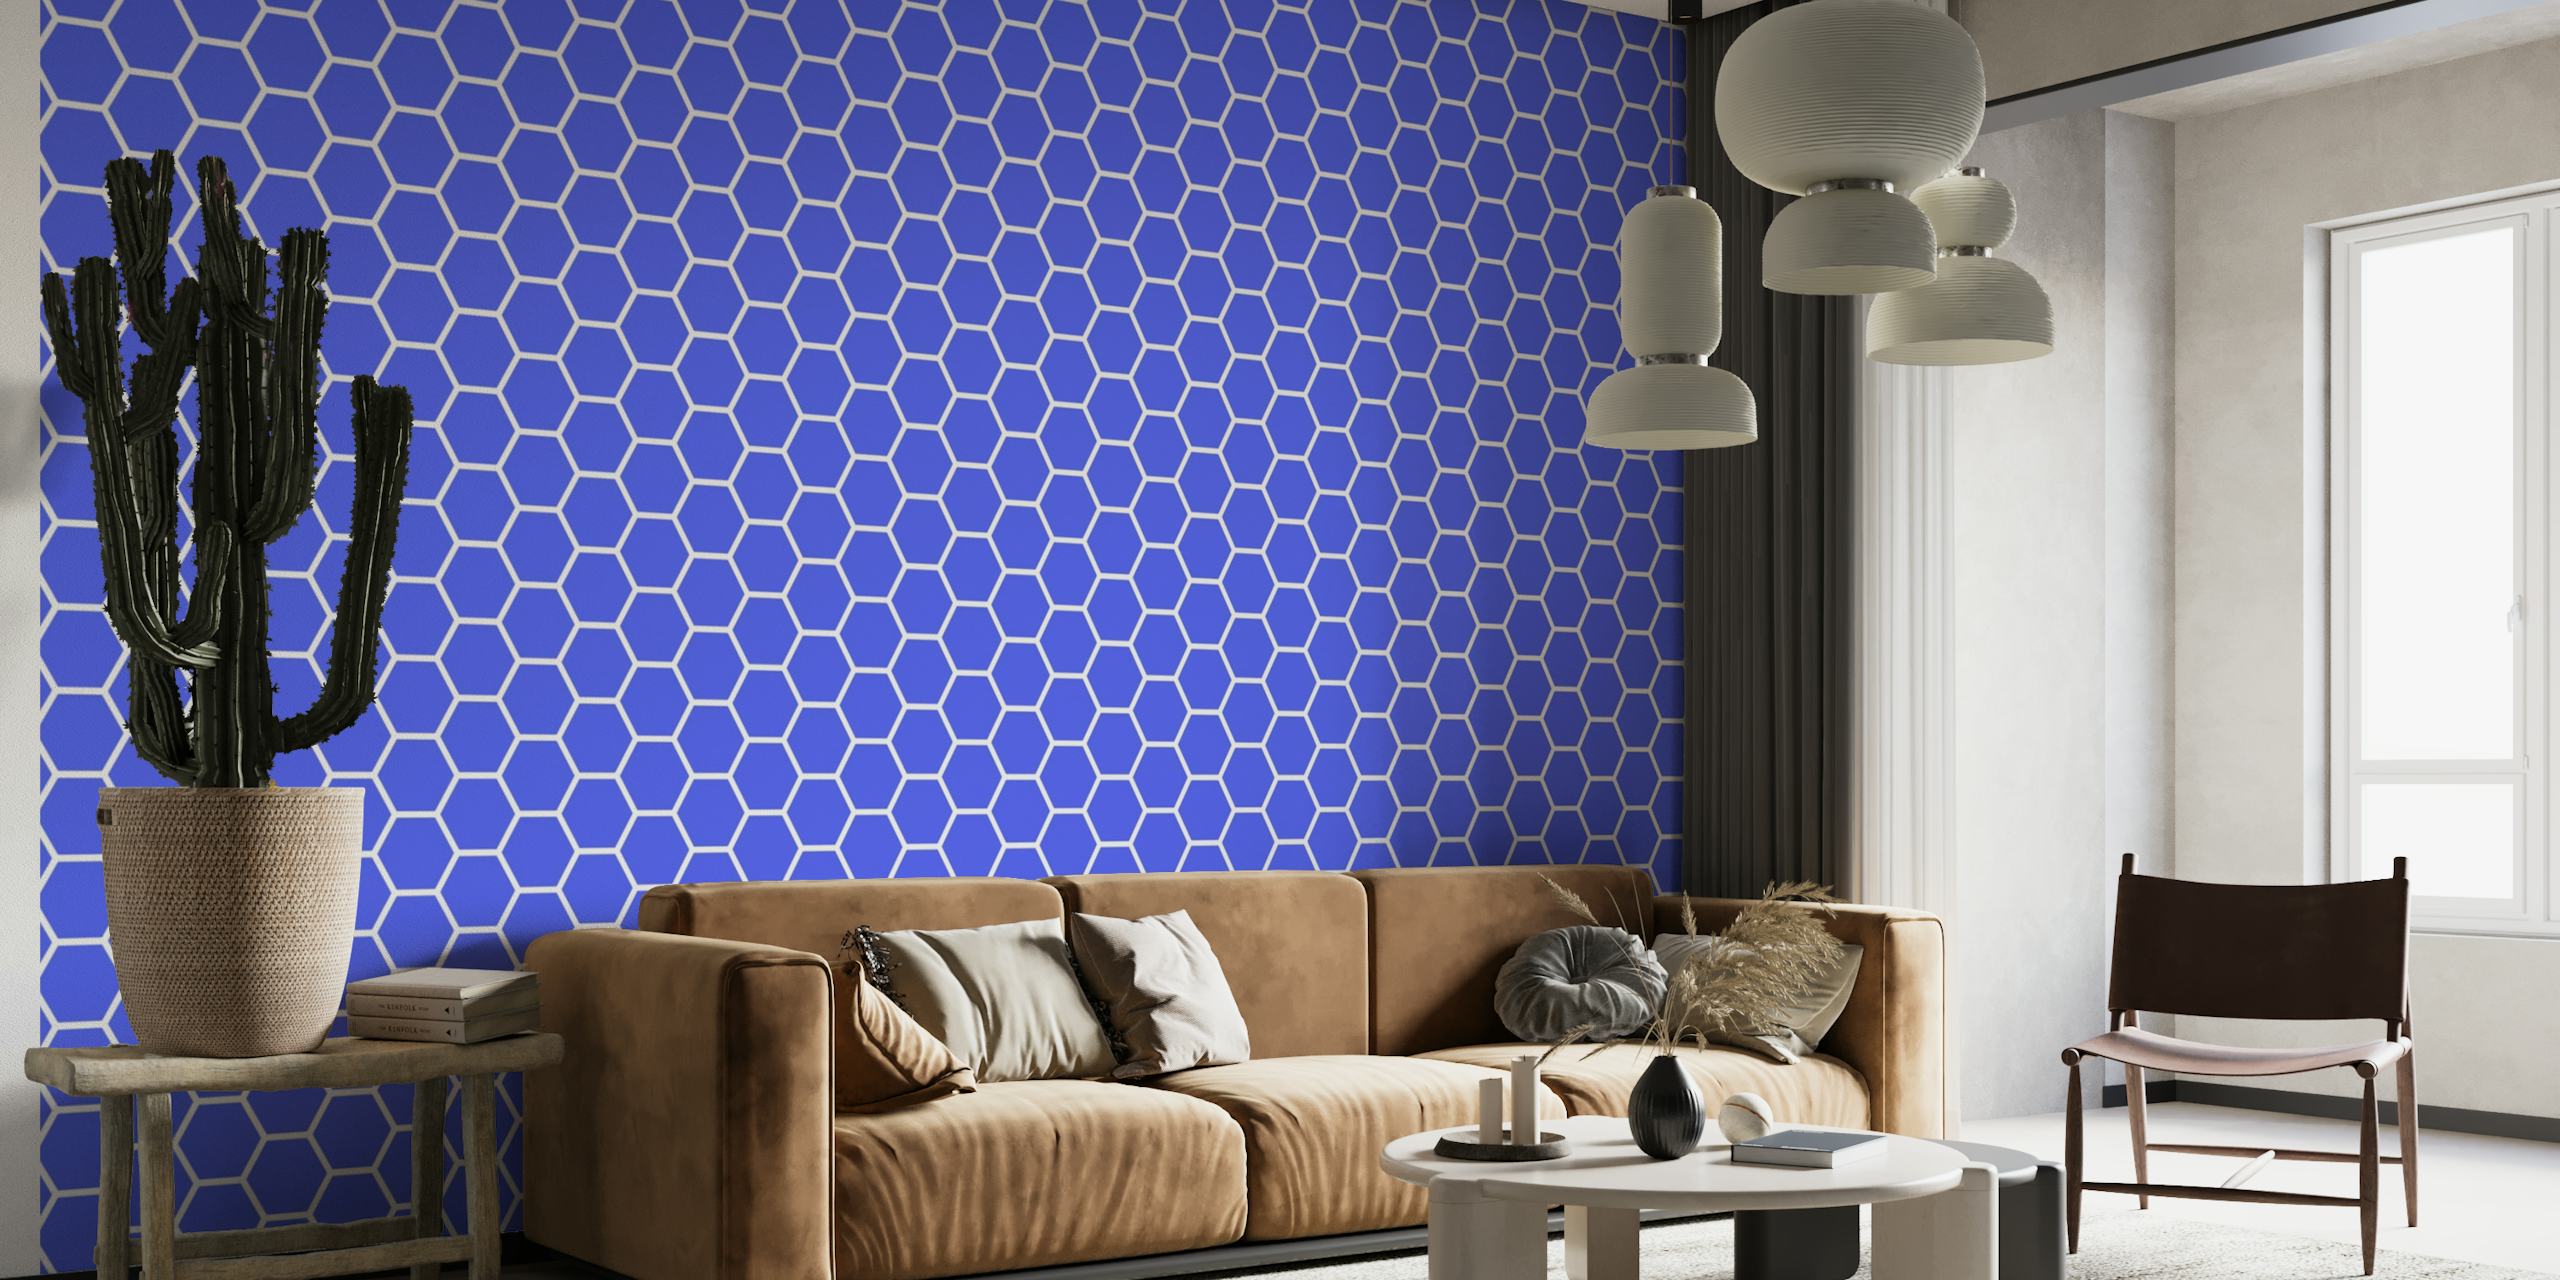 Hellblaues Wandbild mit sechseckigem Muster für eine moderne Inneneinrichtung.